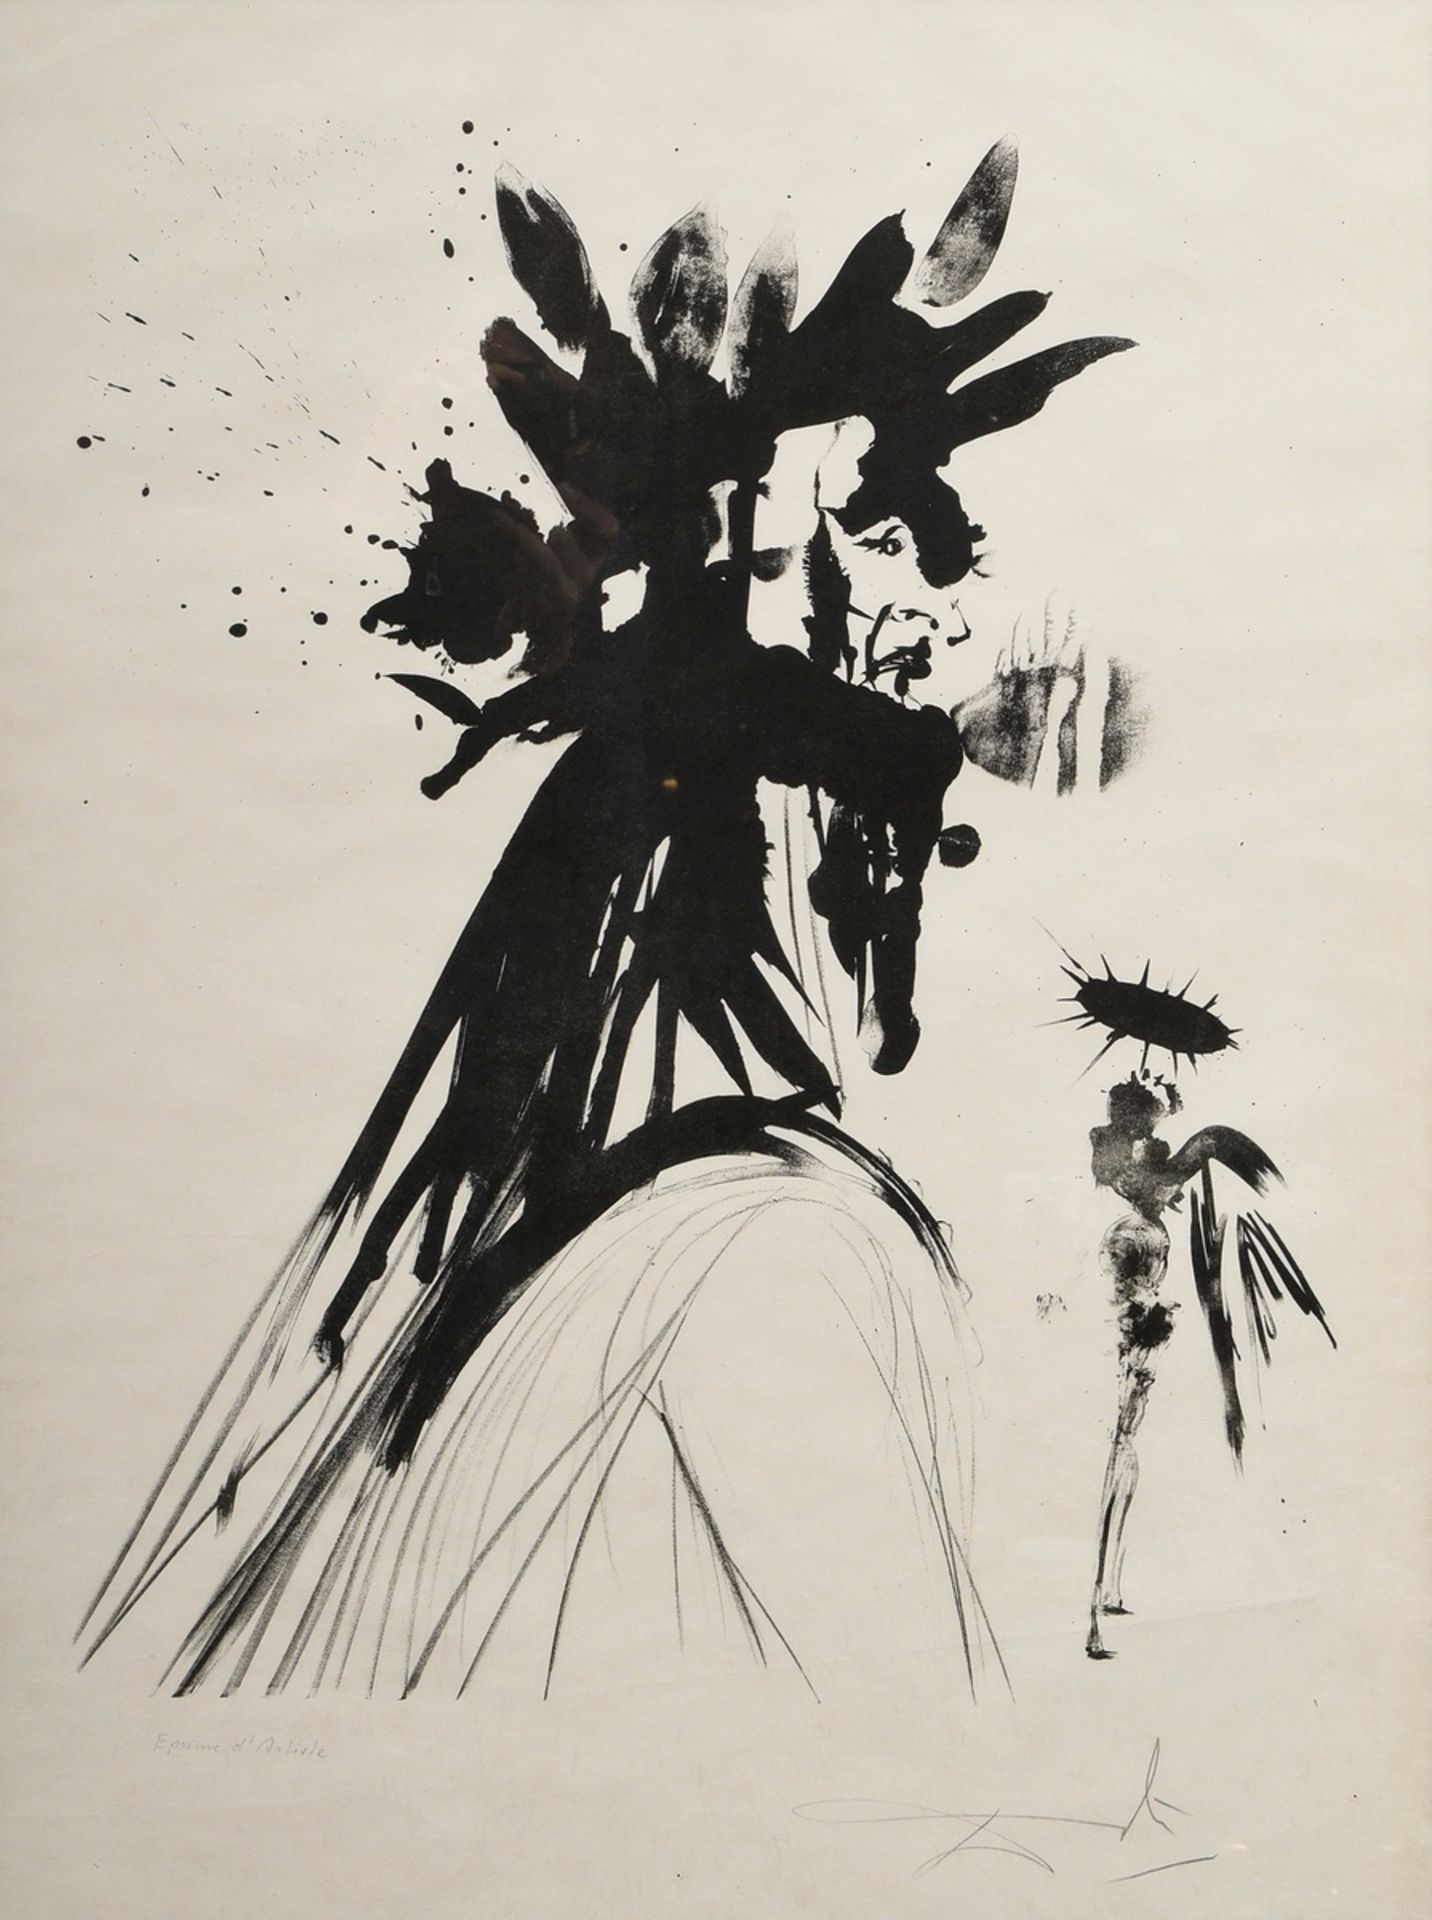 Dali, Salvador (1904-1989) "Dante" 1964, Lithographie, e.a., u. sign./bez., 71,5x53,5cm (m.R. 93,5x